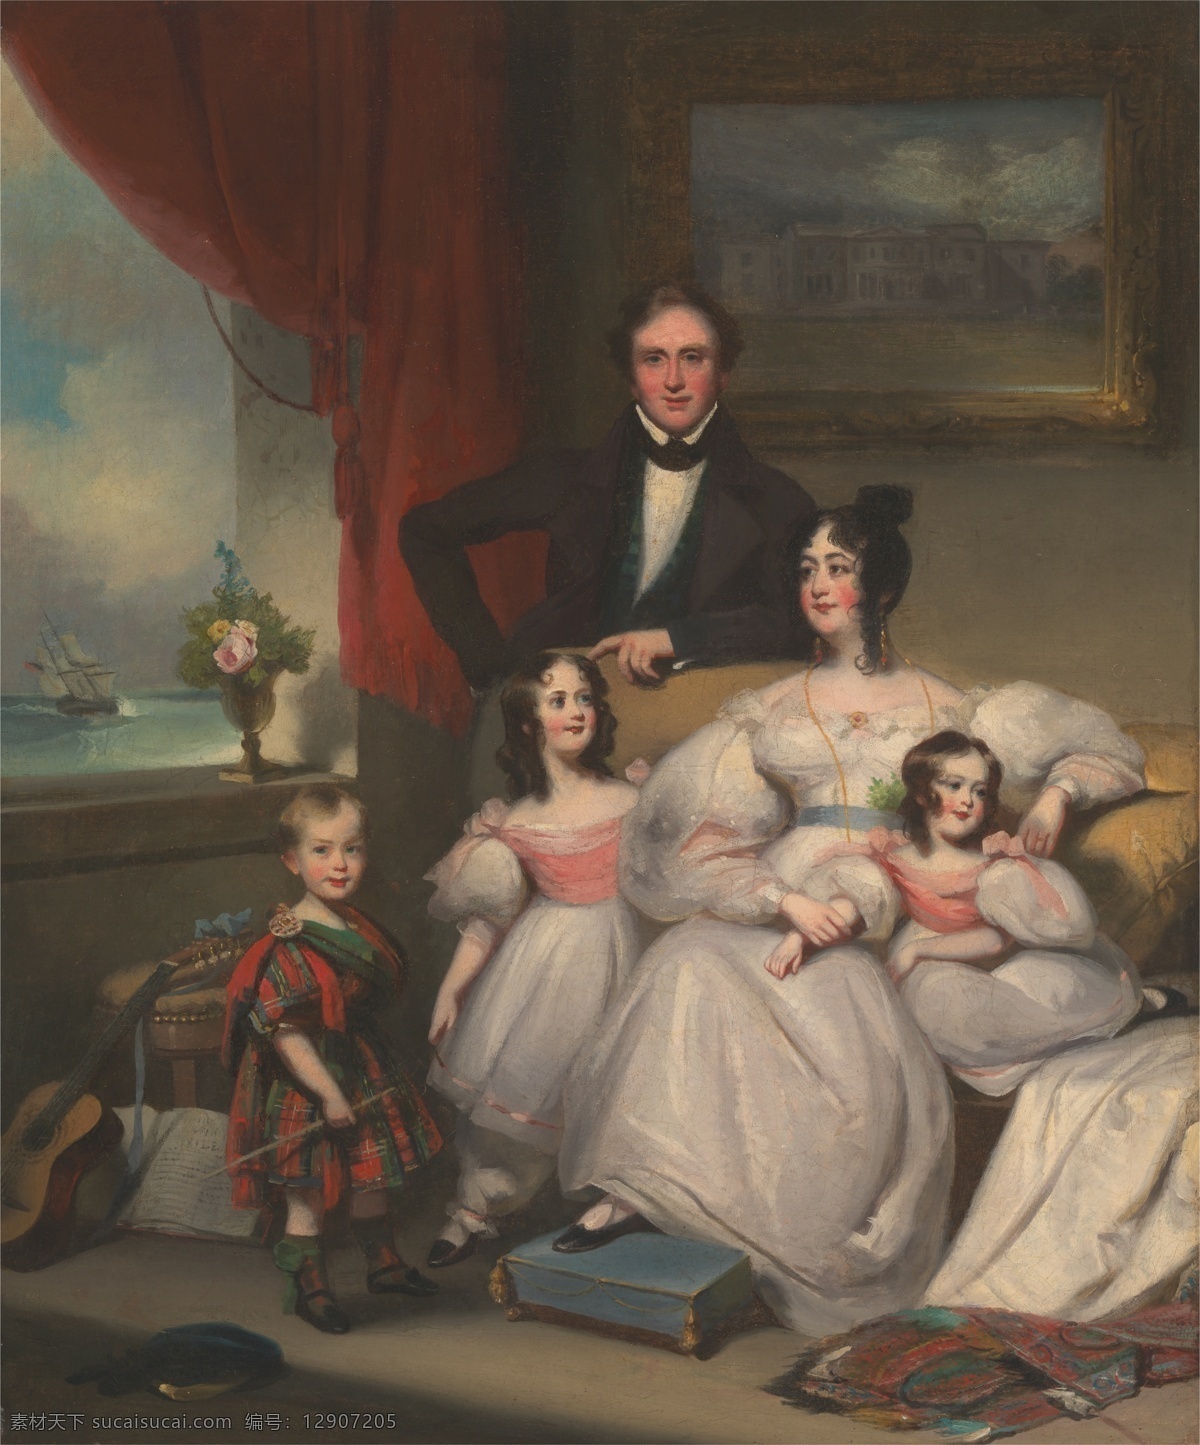 绘画书法 文化艺术 英国 油画 一家 五口 设计素材 模板下载 一家五口 年轻夫妇 两个 女儿 一个 儿子 19世纪油画 贵族之家 家居装饰素材